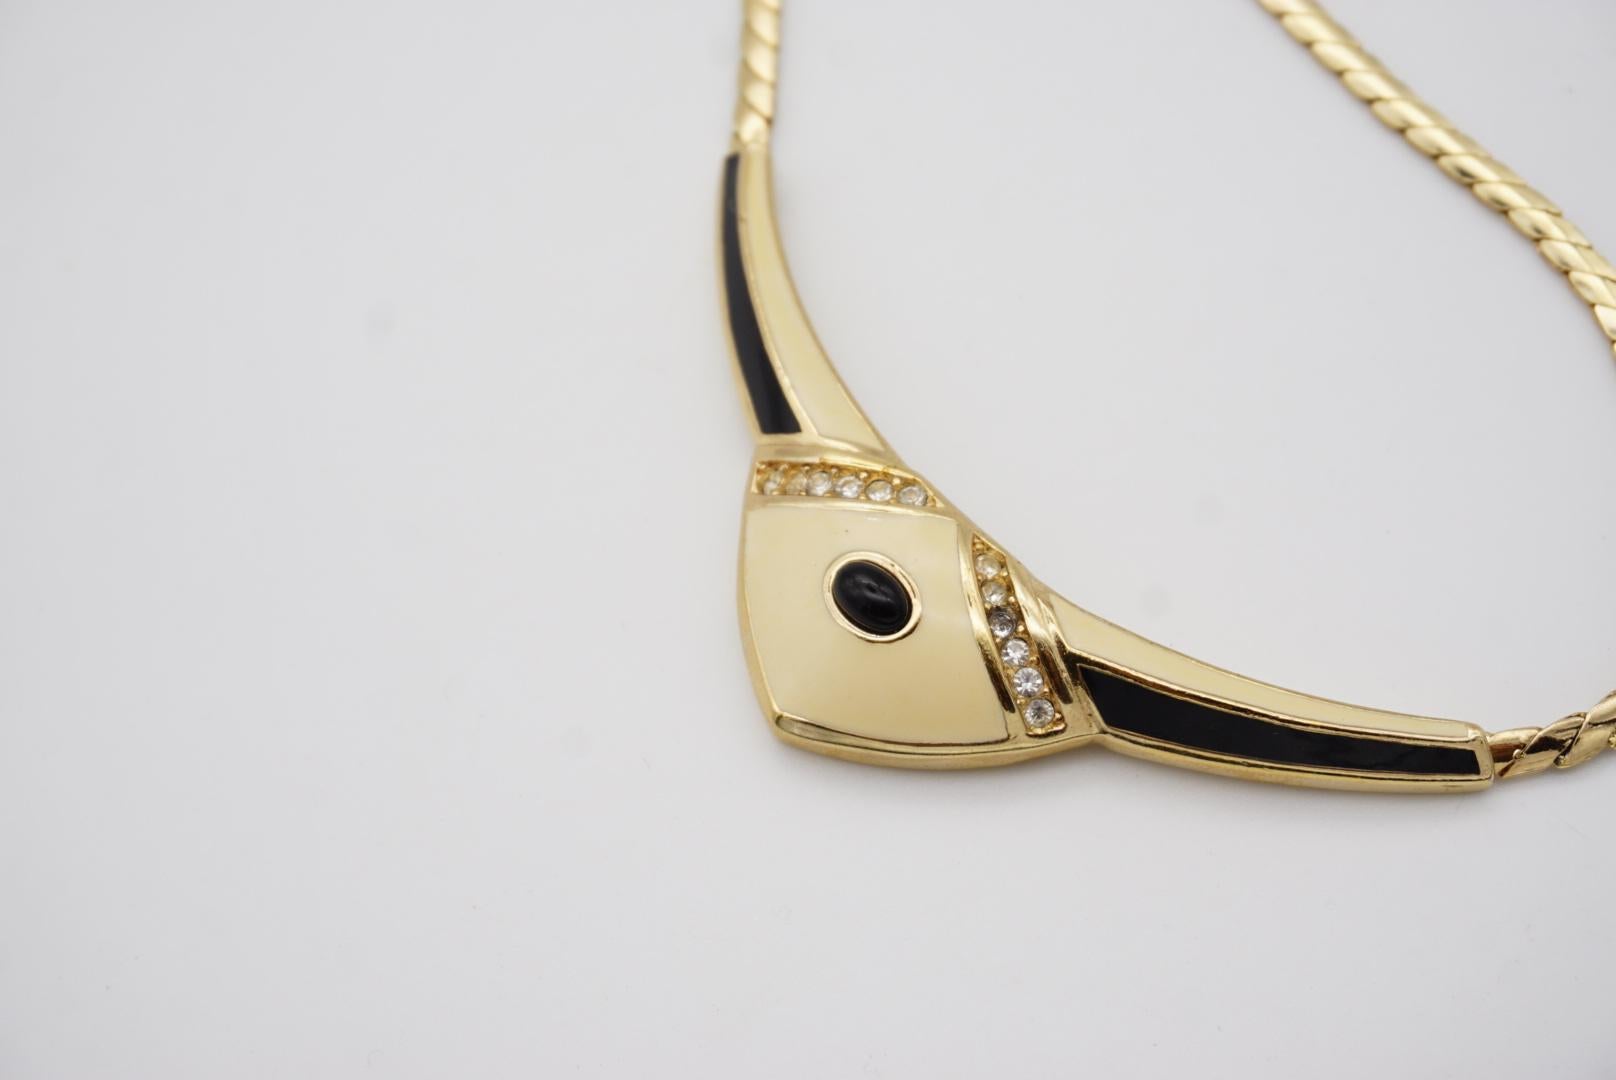 Christian Dior Vintage 1980s Large Beige Black Crystals Gold Pendant Necklace For Sale 6